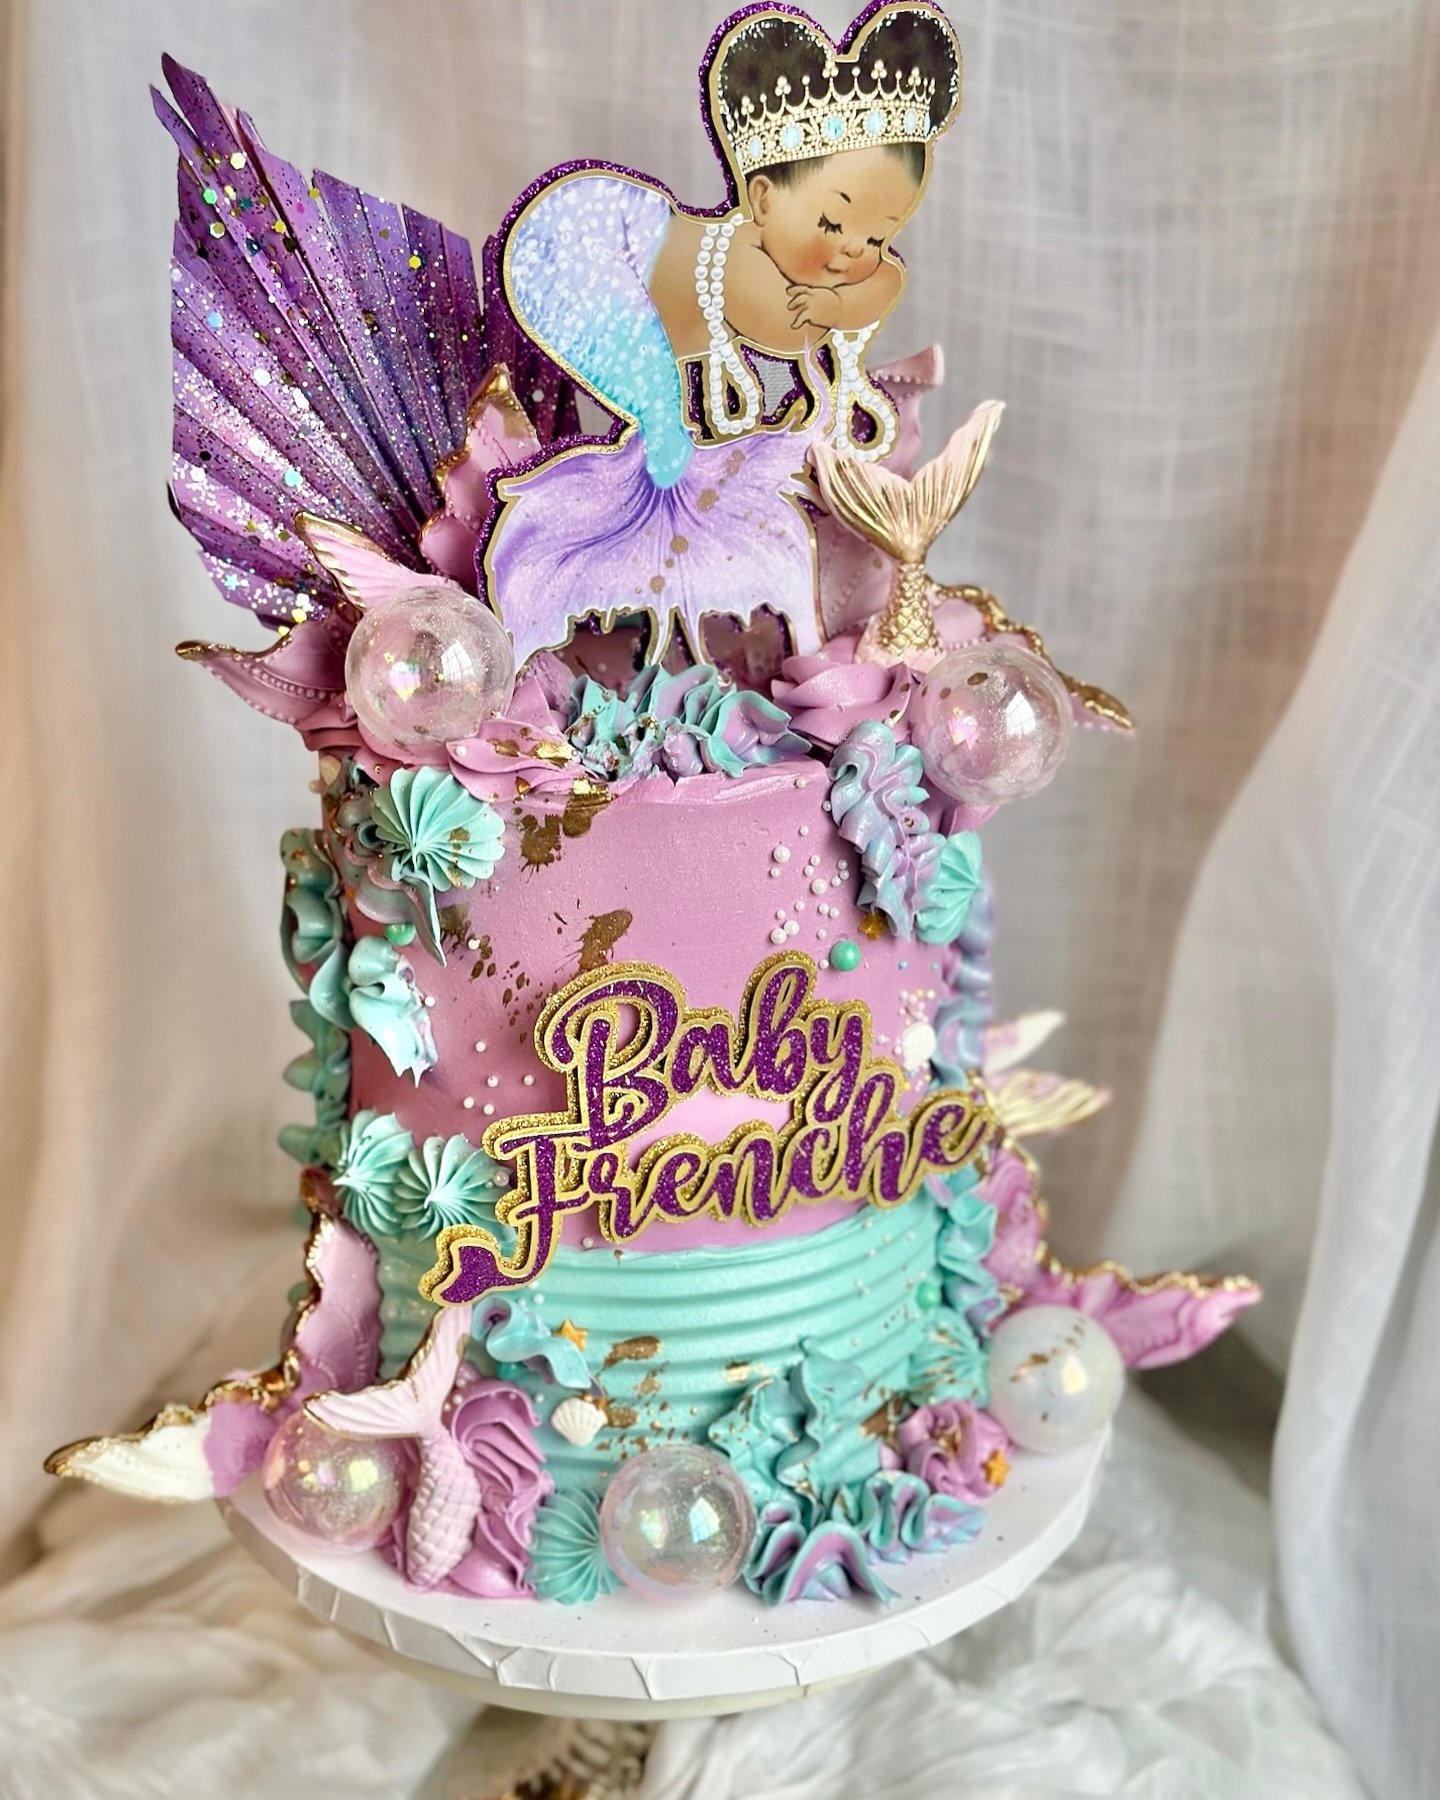 The cutest baby mermaid cake for Baby Frenche ✨💜
&bull;
&bull;
&bull;
#thesilvawhisk #cakes #baking #cake #cakedecorating #foodie #cakegoals #dessert #instacake #baker #travelingbaker #cakedesign #cakesofinsta #marylandbaker #dmvbaker #cakesofig #dc